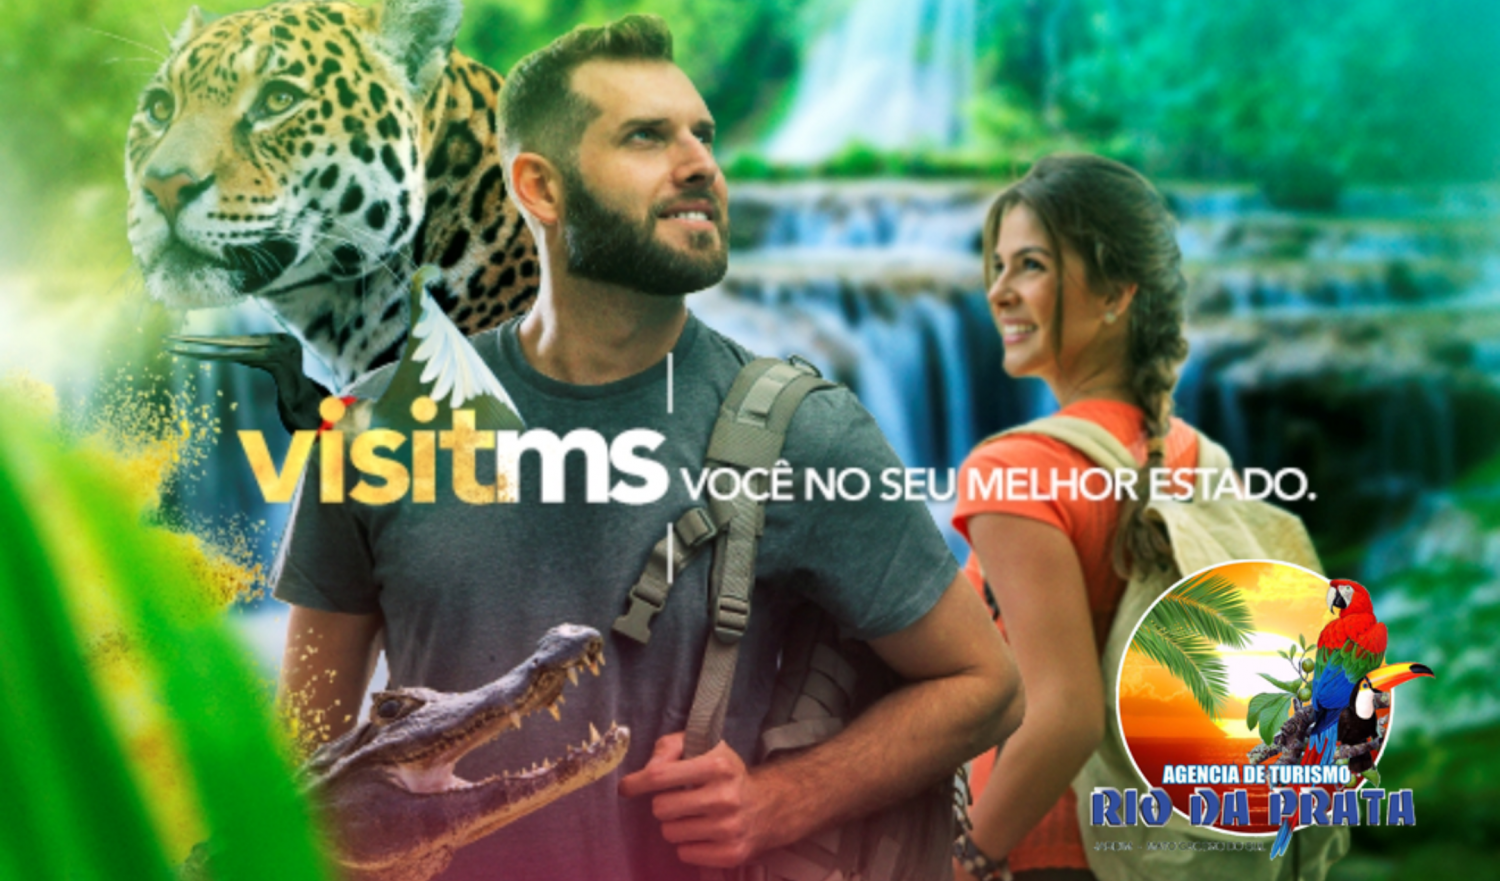 Agência de Turismo Rio da Prata